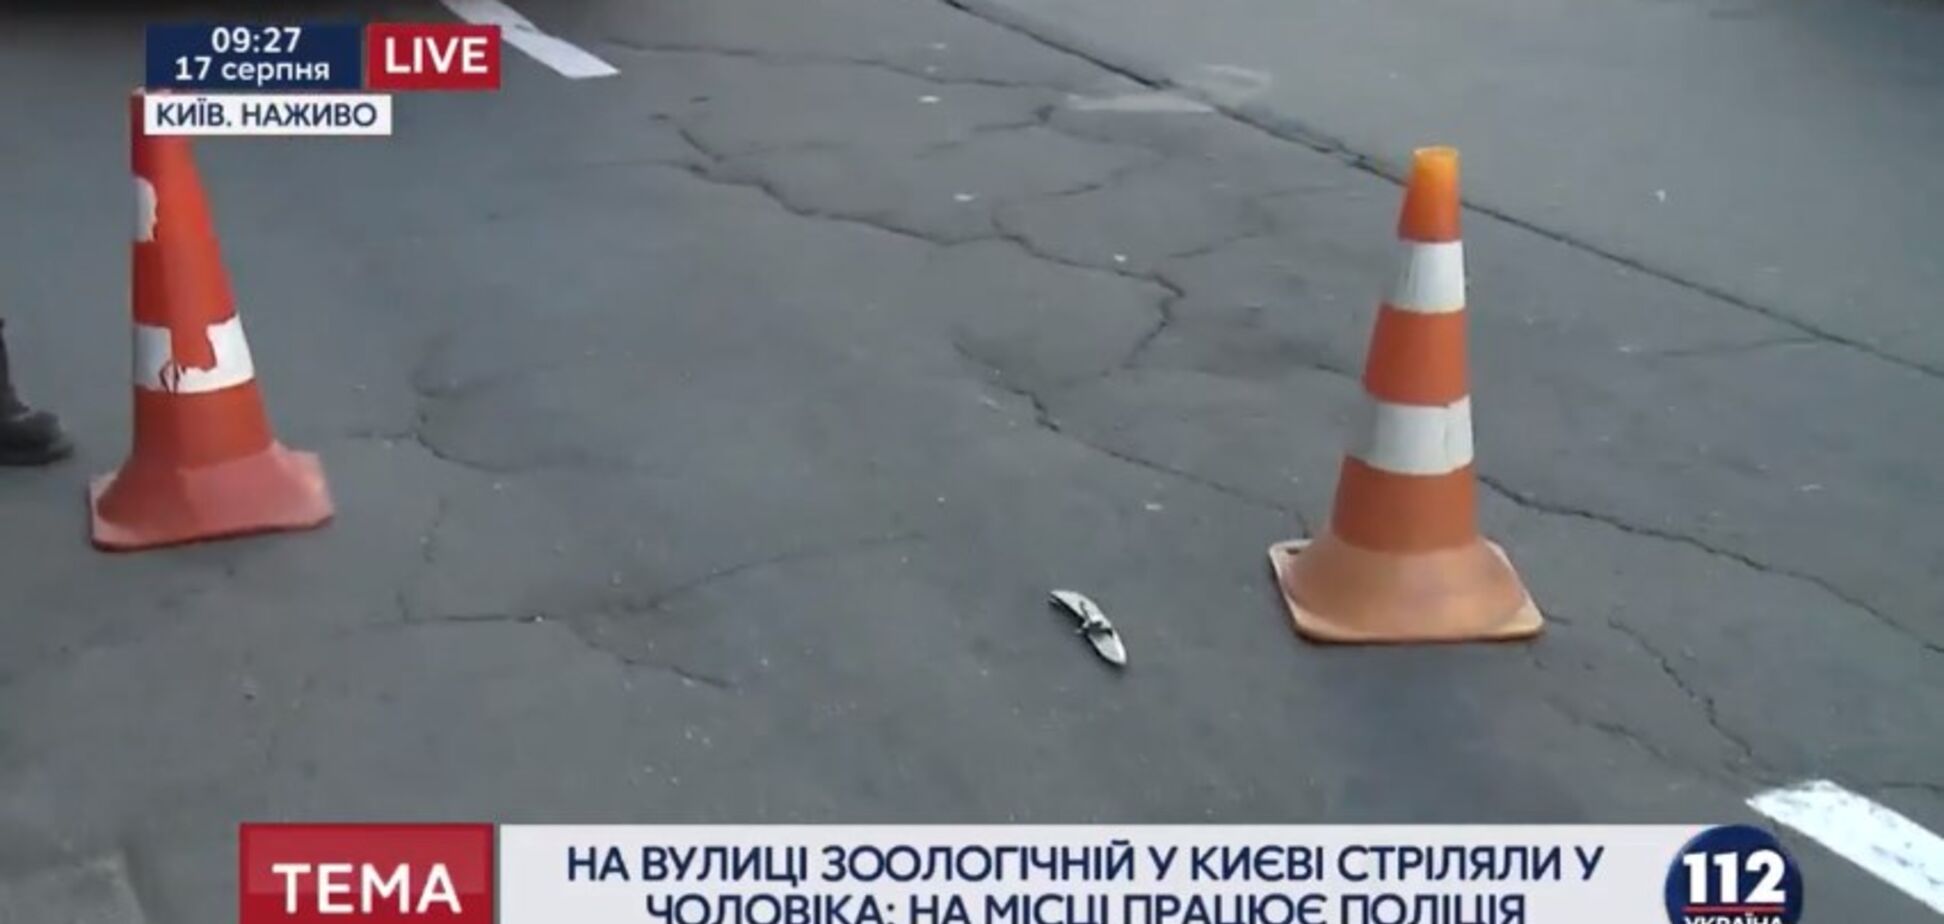 Вооруженное ограбление в Киеве: опубликовано видео с места ЧП